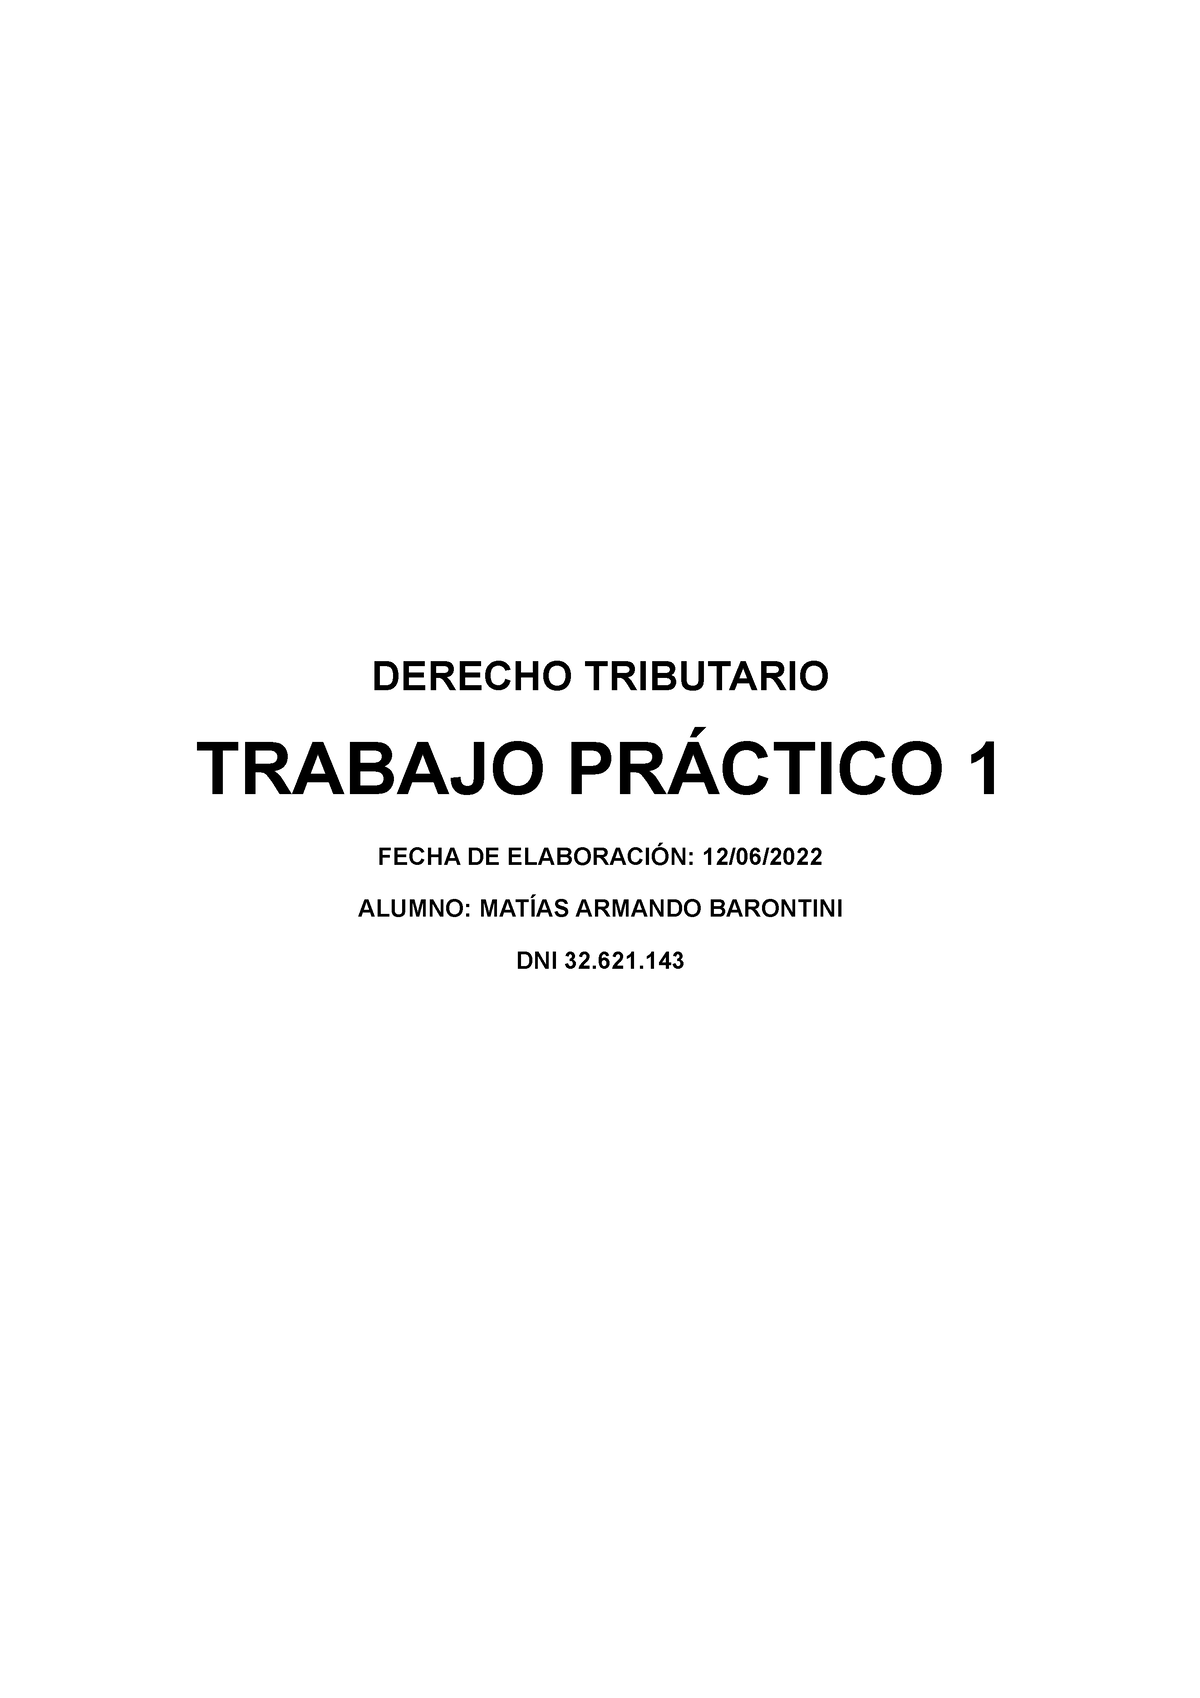 Tp 1 Tributario Derecho Tributario Trabajo PrÁctico 1 Fecha De ElaboraciÓn 1206 Alumno 9072